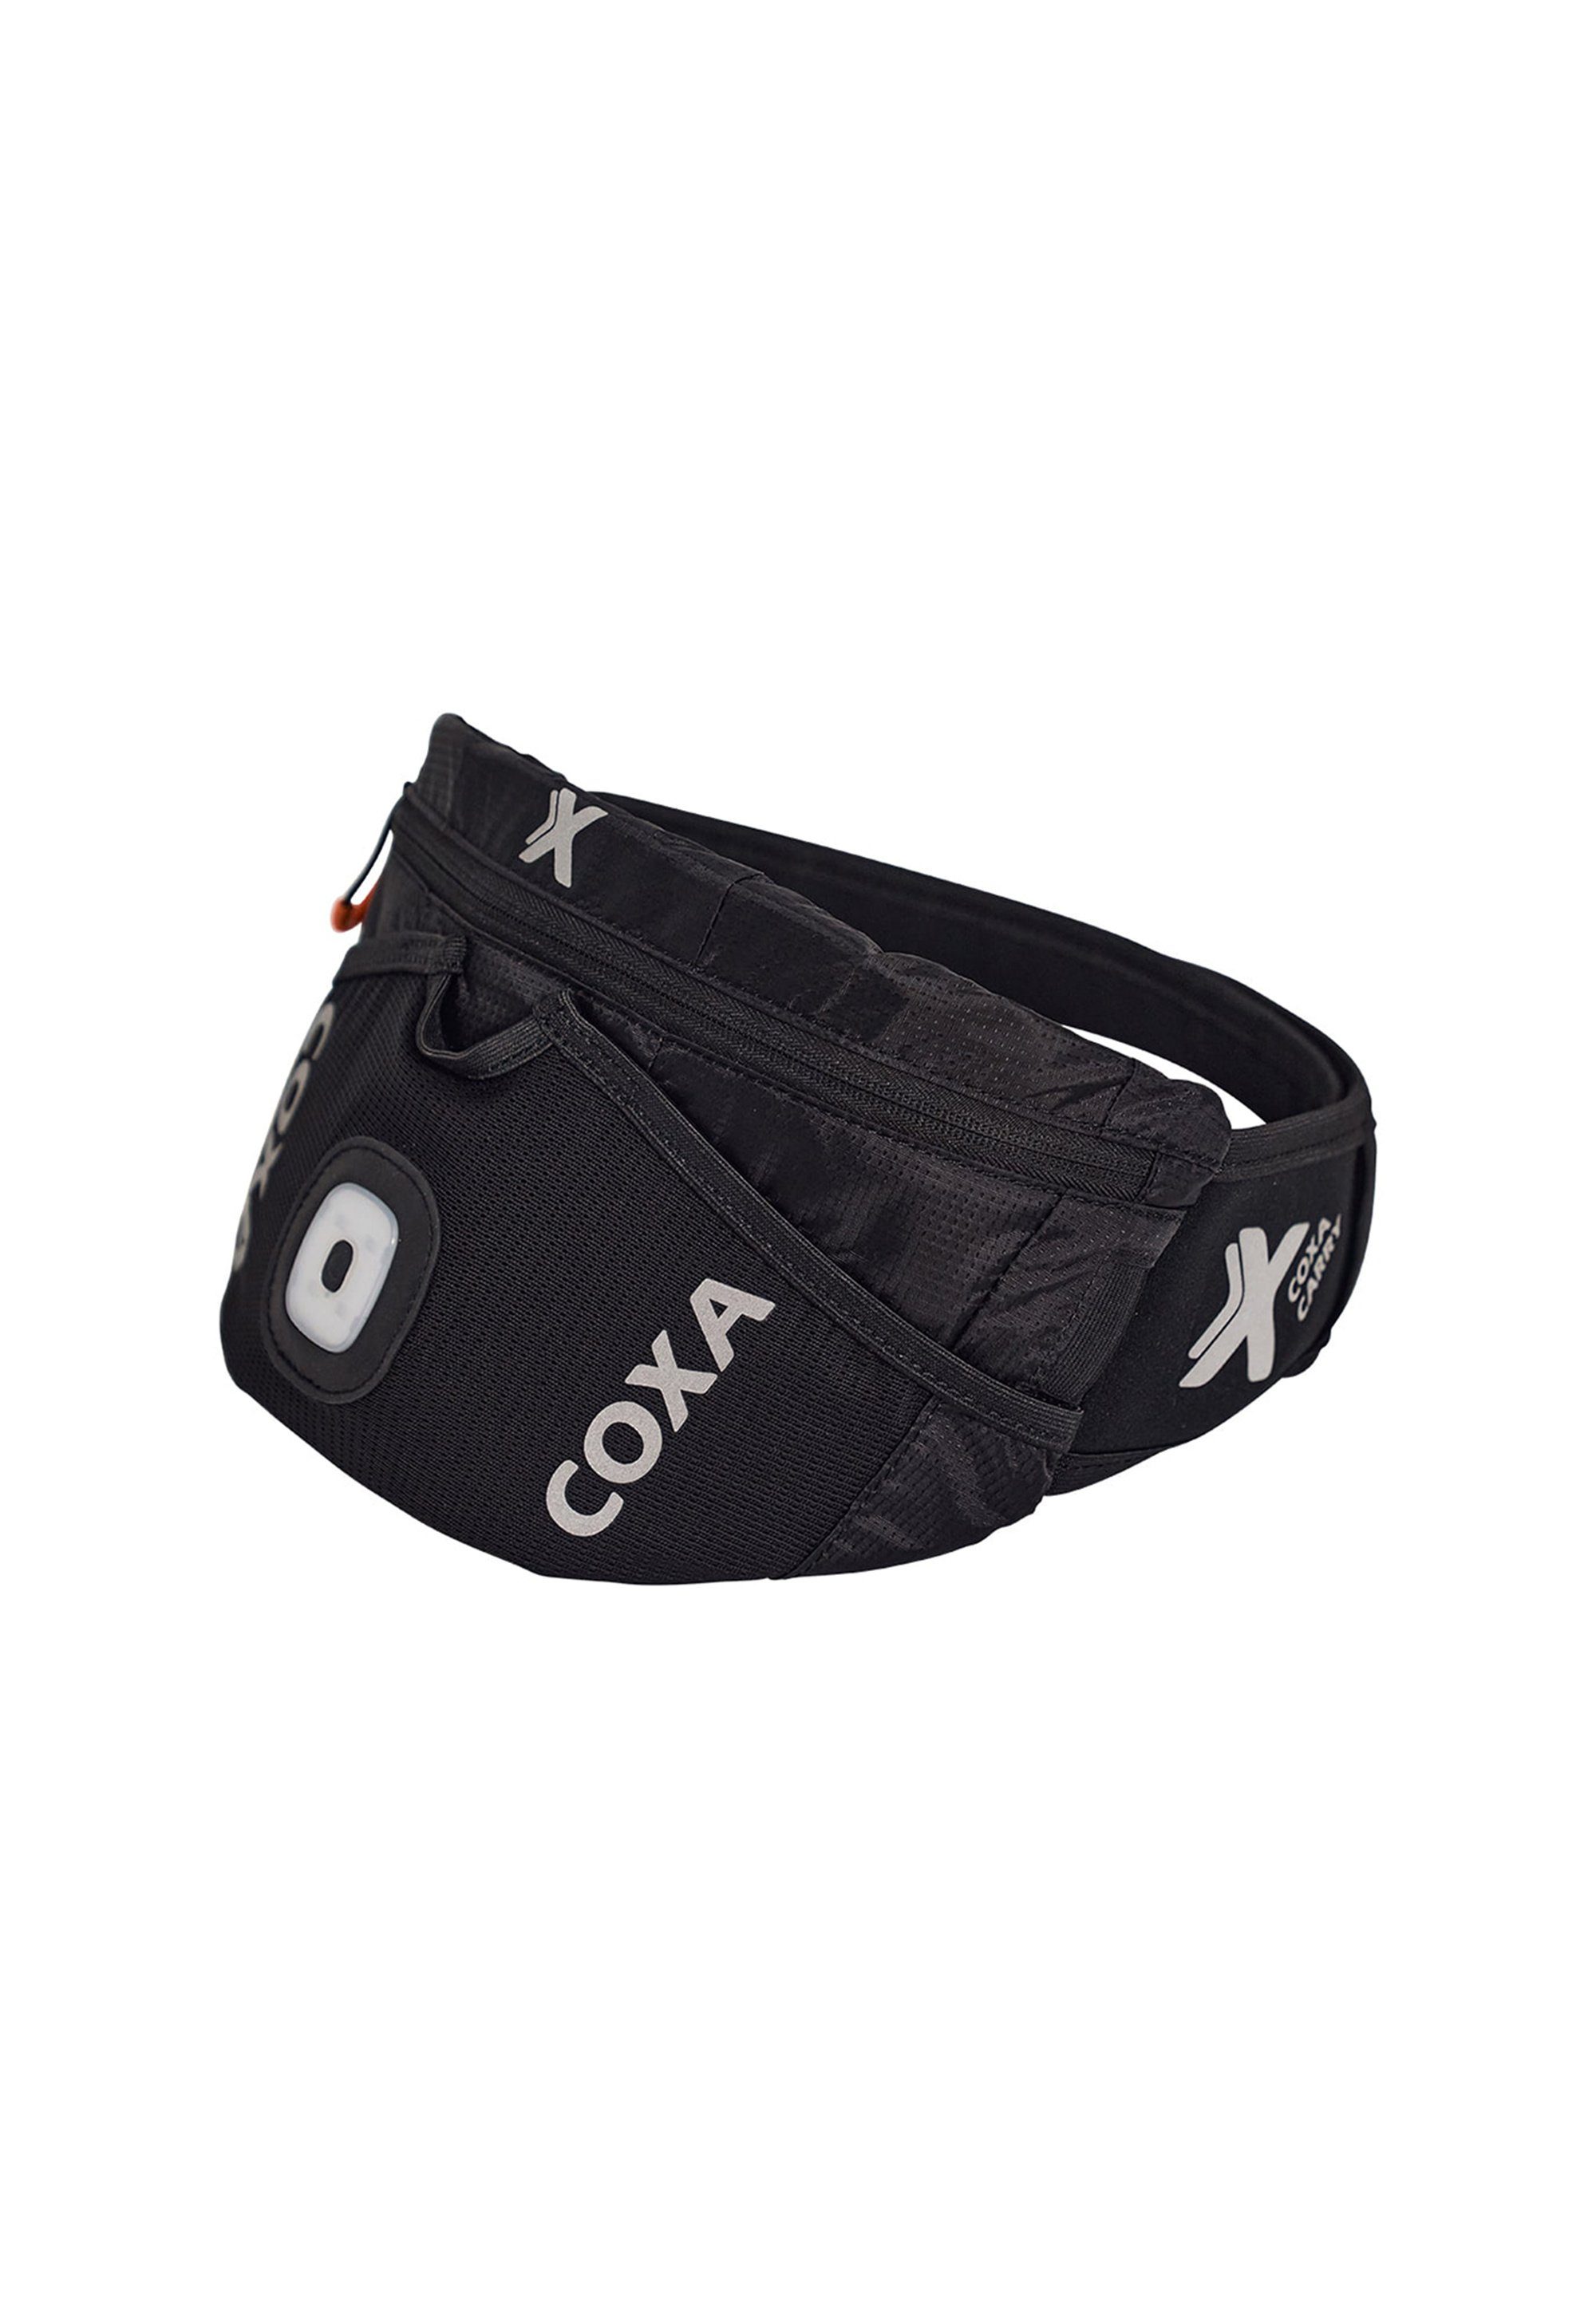 Carry sports, WR1 Gürteltasche outdoor Black, Coxa